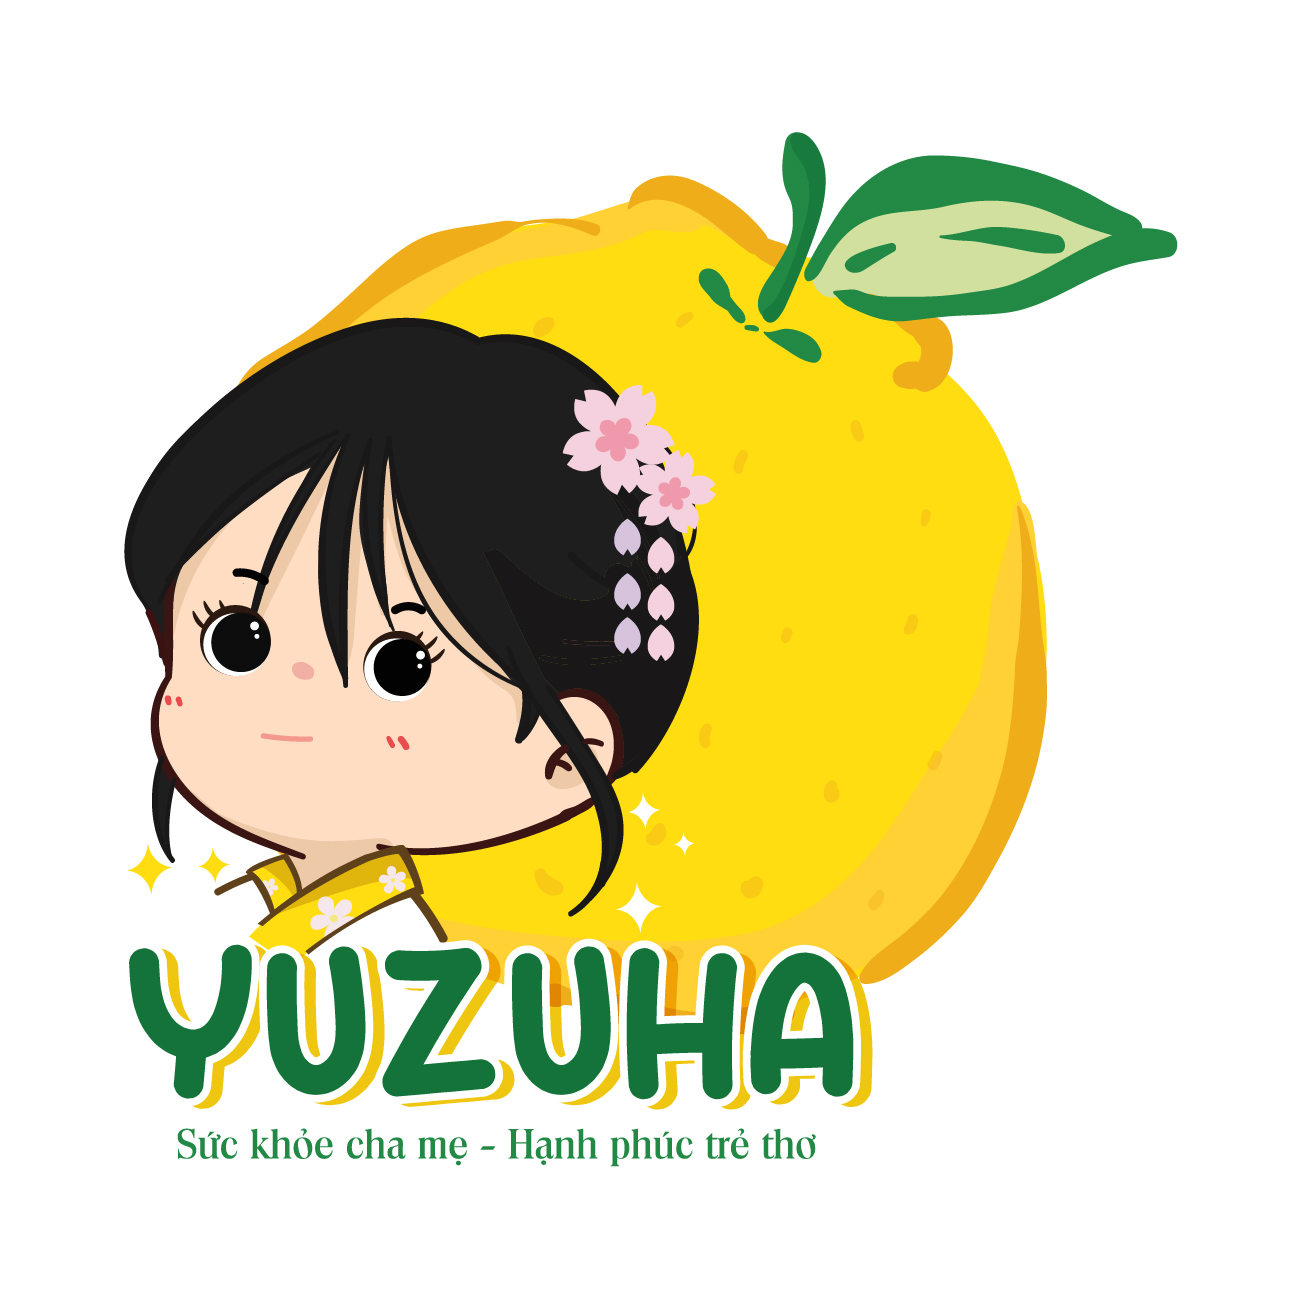 Yuzuha Shop